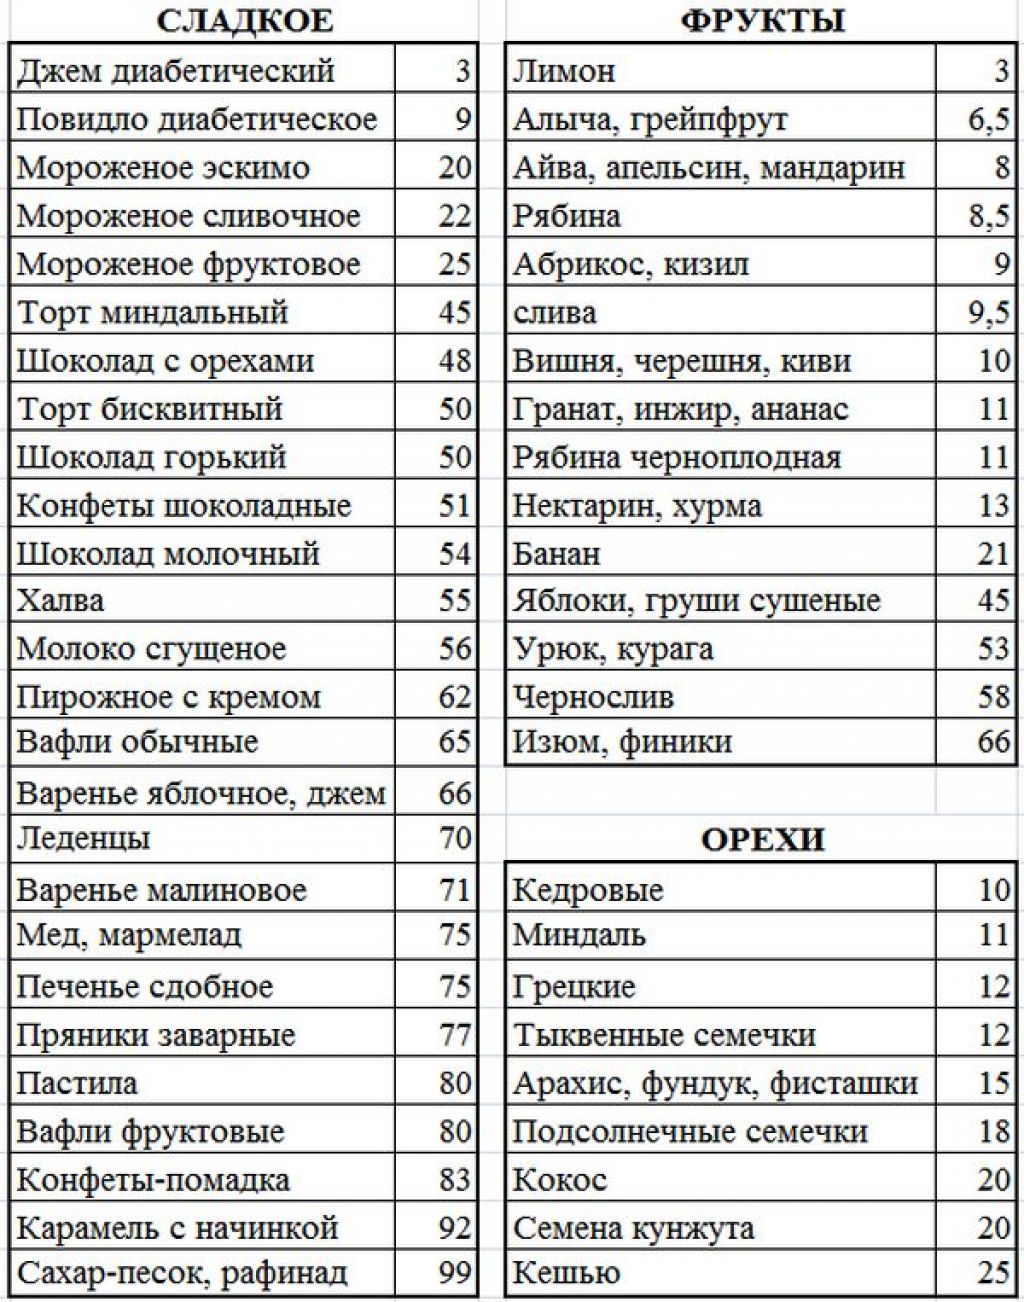 Таблица продуктов по кремлевской диете в у.е